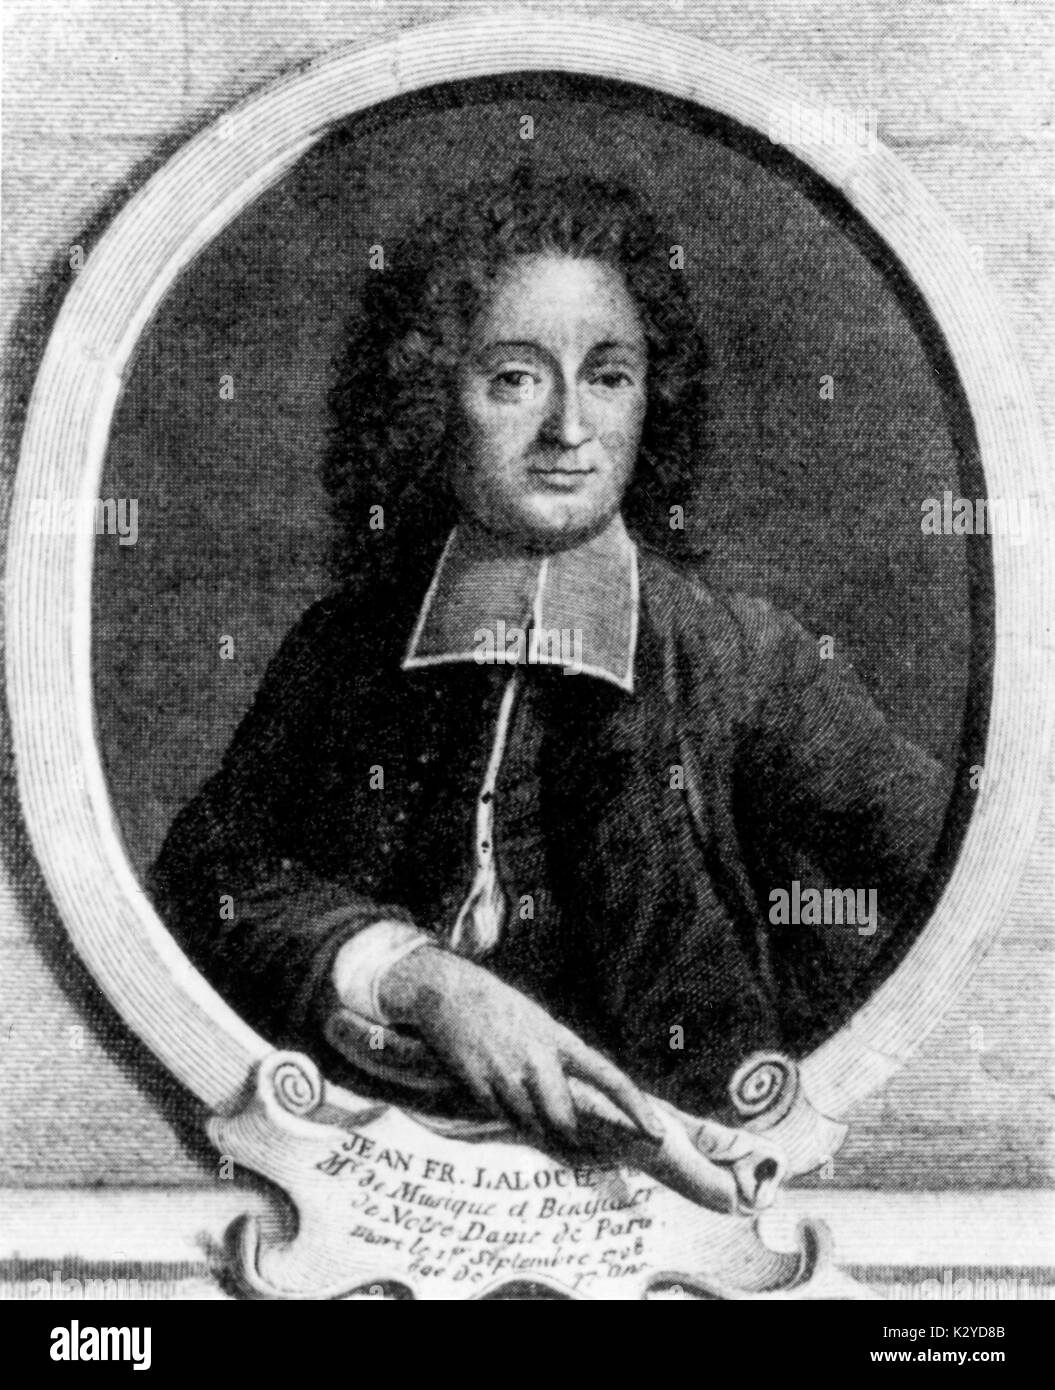 LALLOUETTE, Jean Francois violinista y compositor francés, 1651-1728 Foto de stock